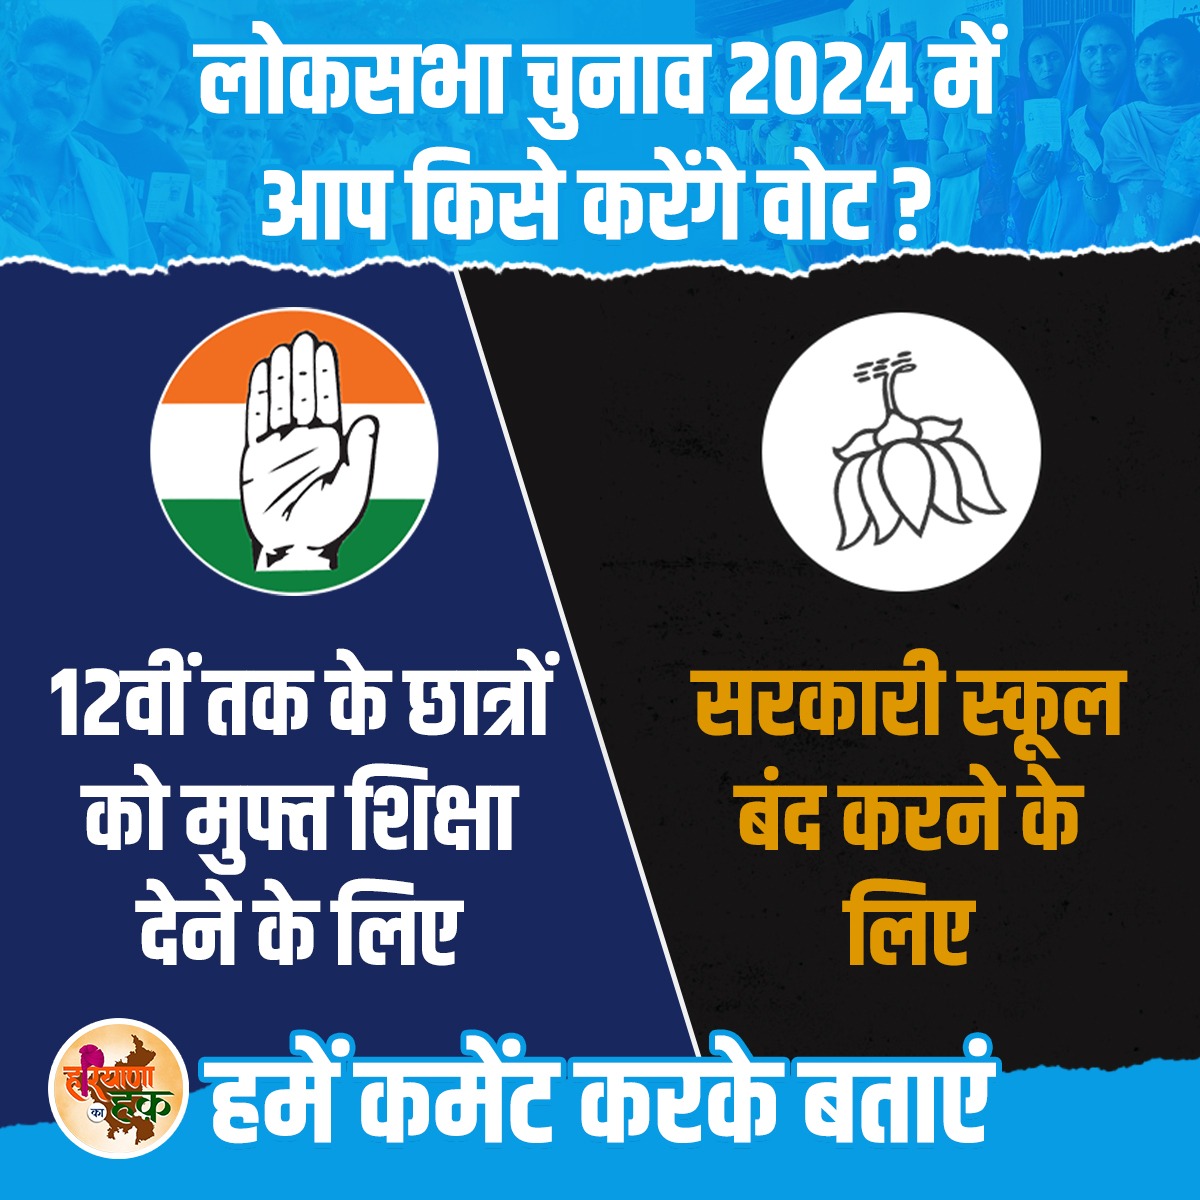 लोकसभा चुनाव 2024 में आप किसे करेंगे वोट ?
.
.
.
.
.
#HaryanaPolitics
#LokSabhaElection2024
#haryanakahaq
#congressvsbjp
#HaathBadlegaHalaat